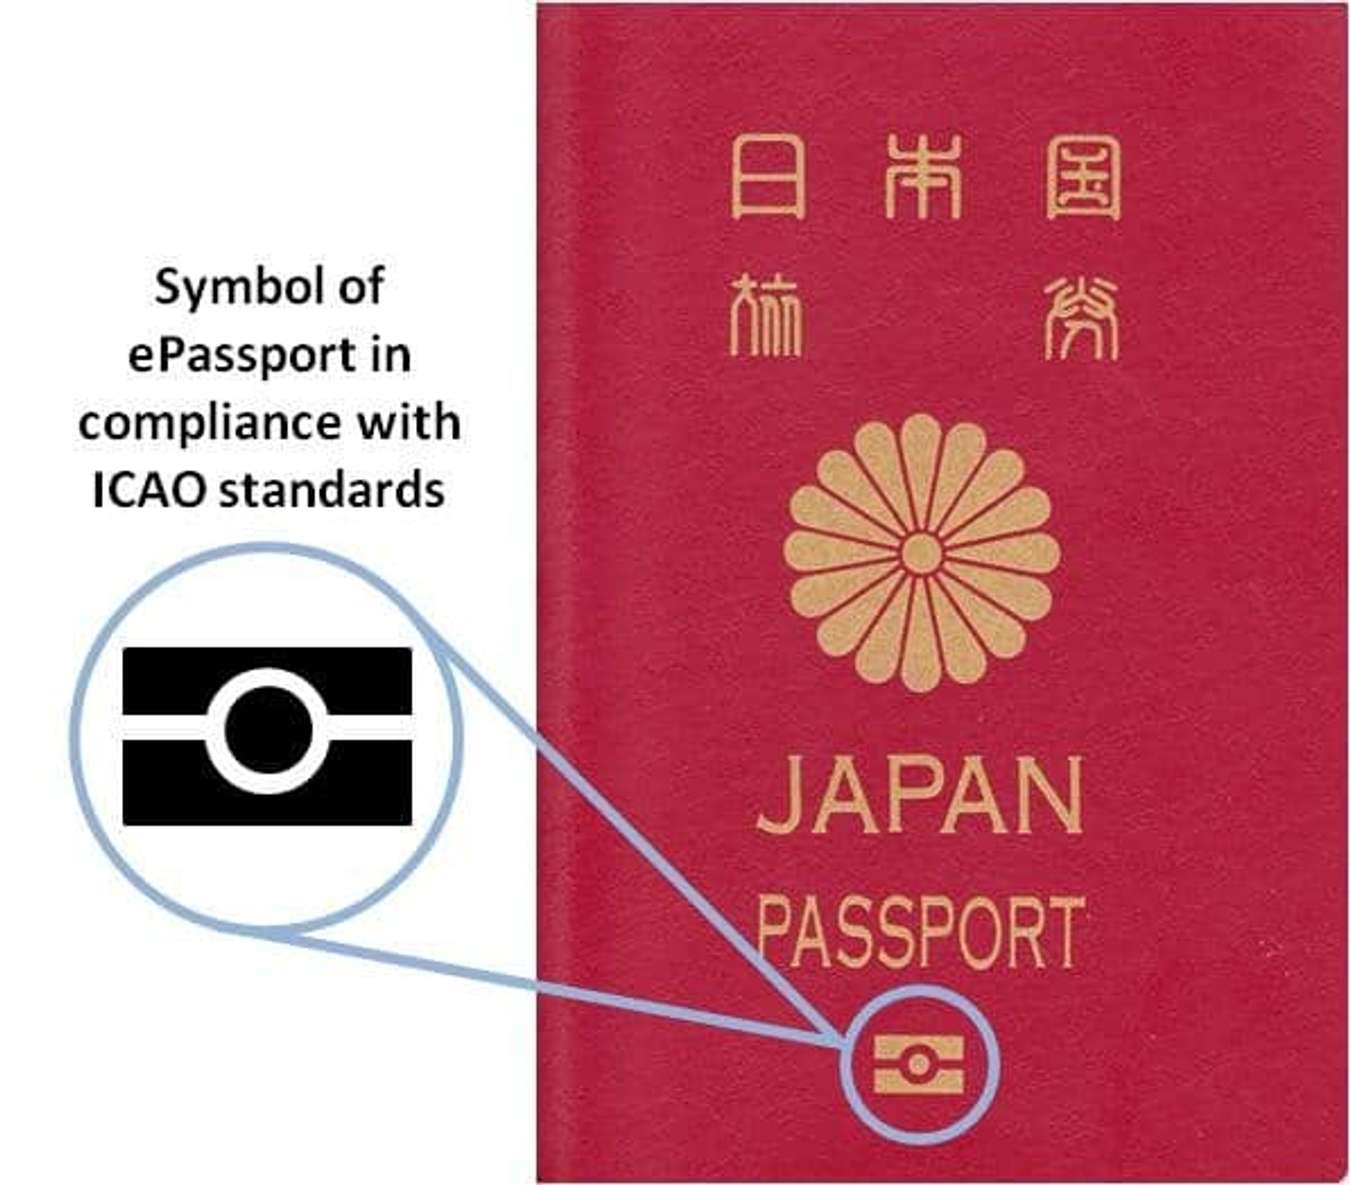 Kinh nghiệm du lịch Nhật Bản tiết kiệm mà không cần phải thắt lưng buộc bụng